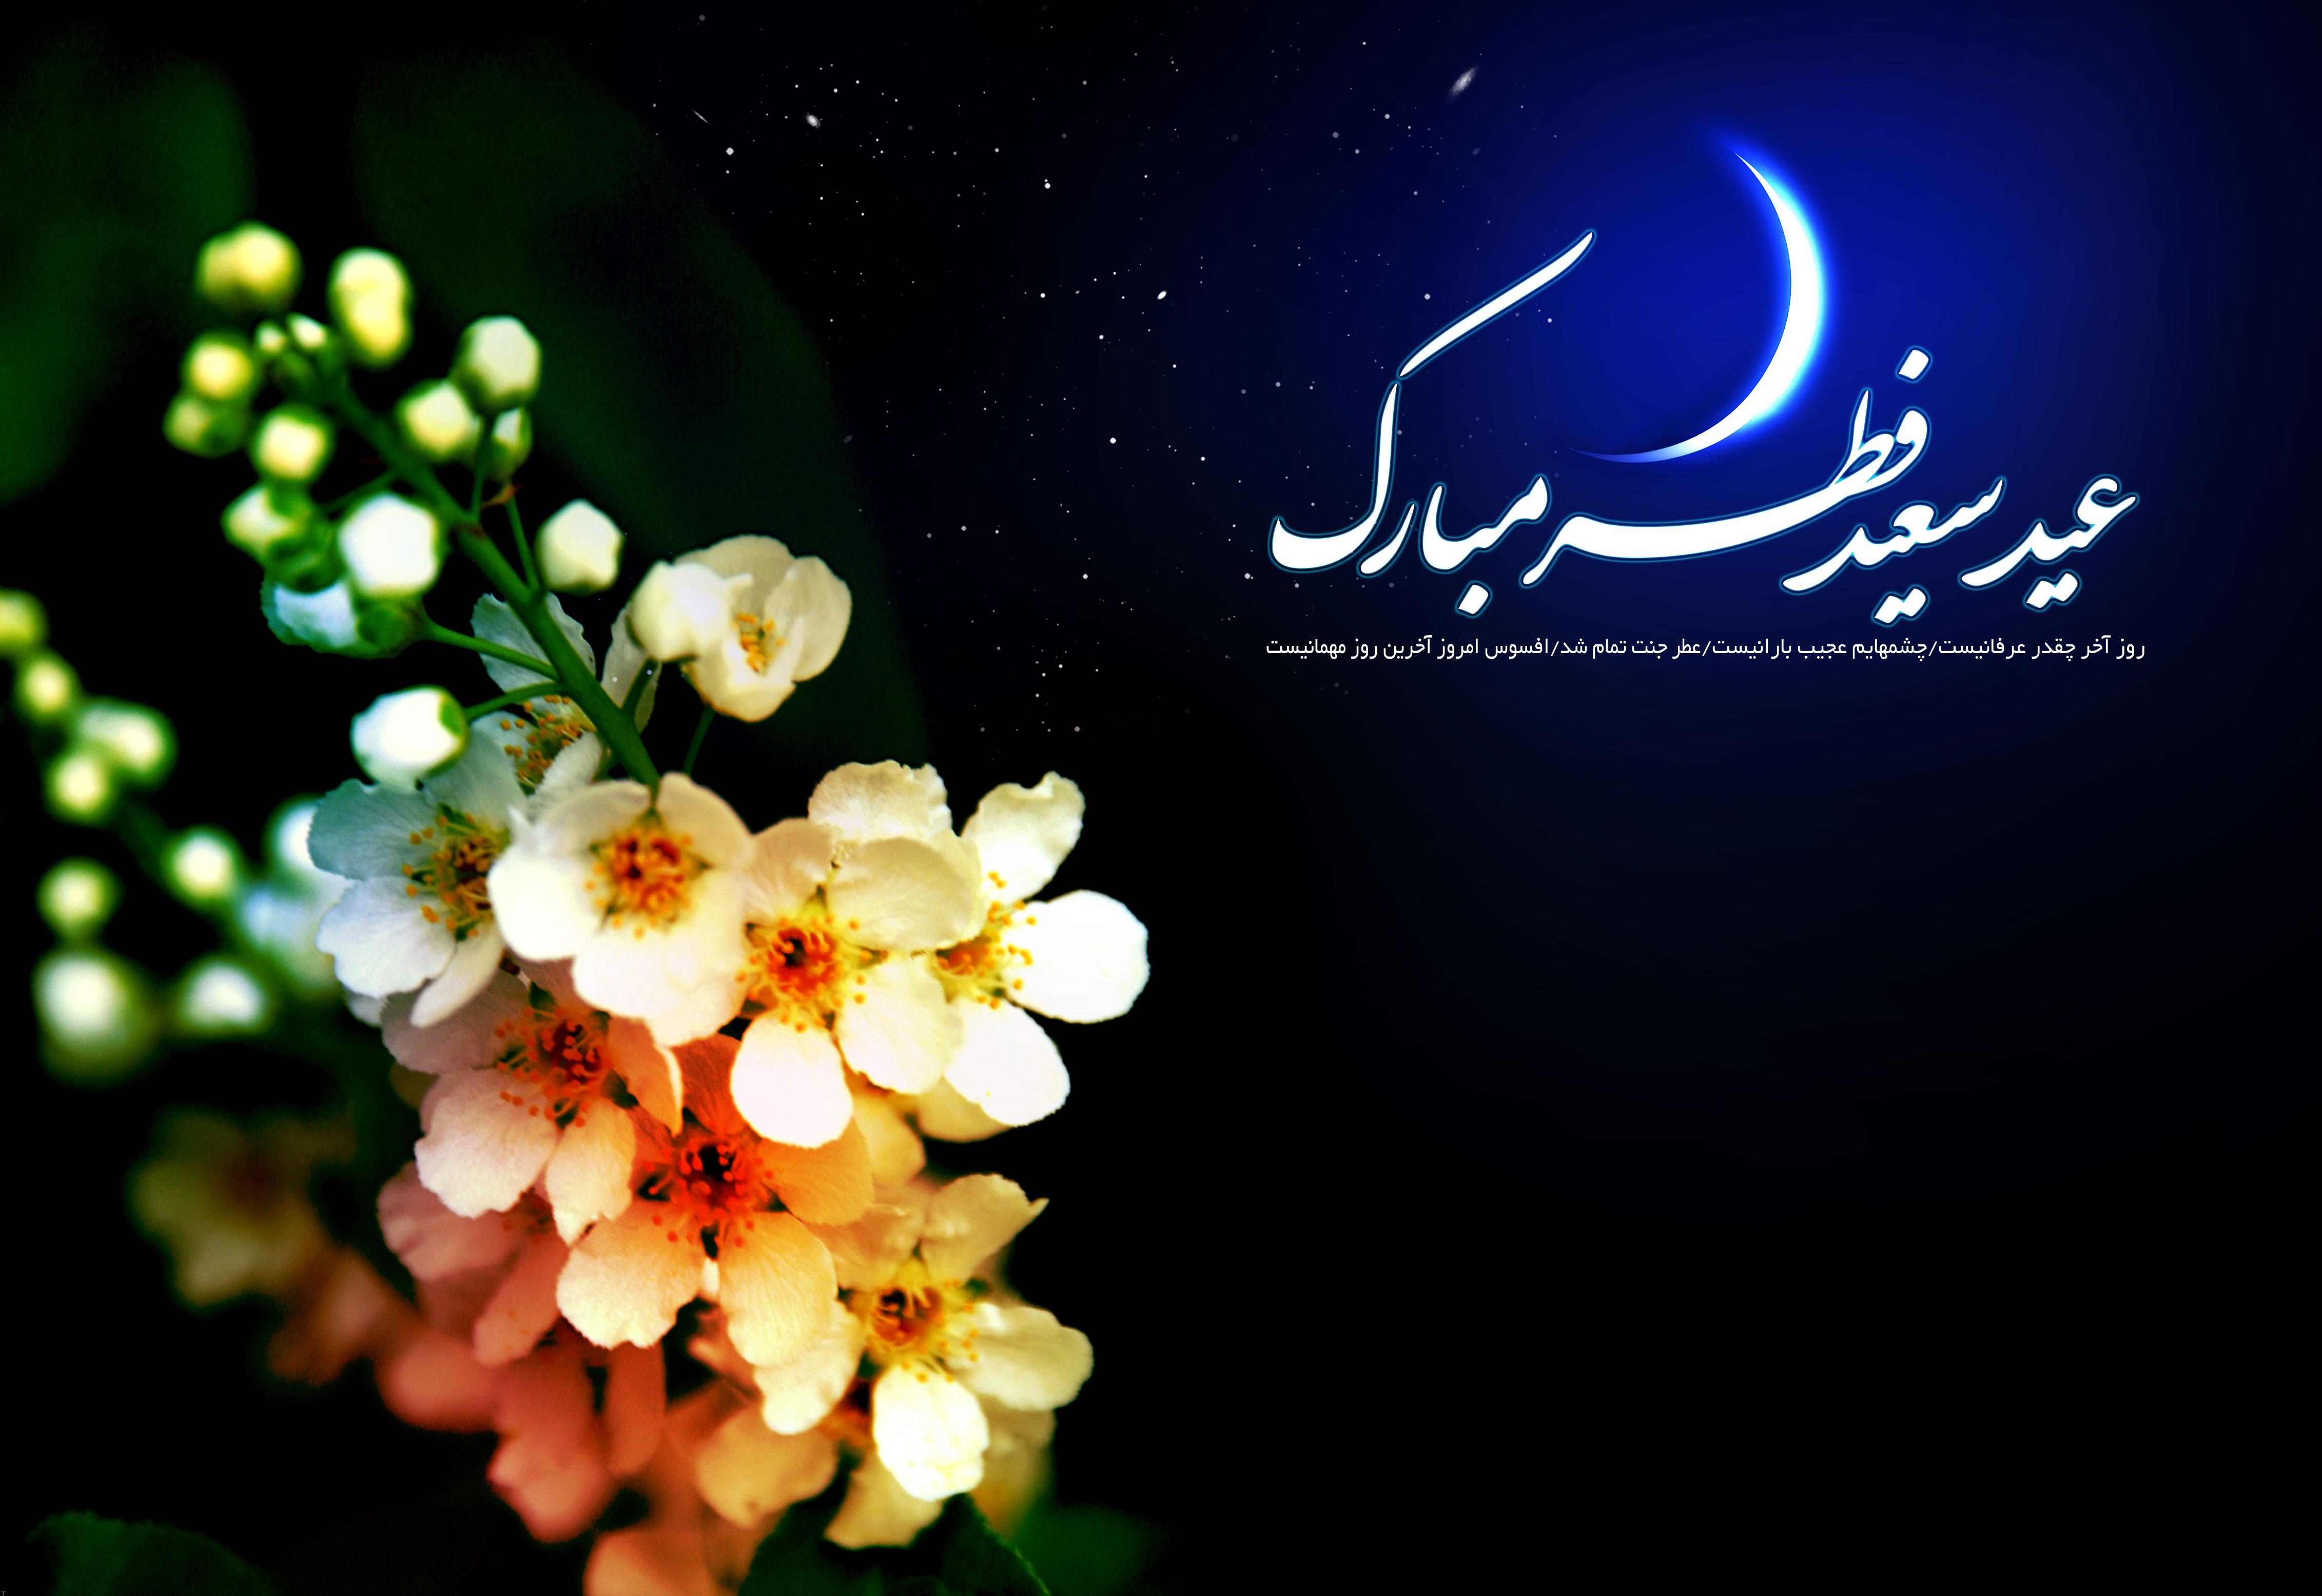 عید فطر، عید بندگی و آغاز تولدی دوباره برای مومنان است/ از خواندن نماز عید سعید فطر غافل نشویم